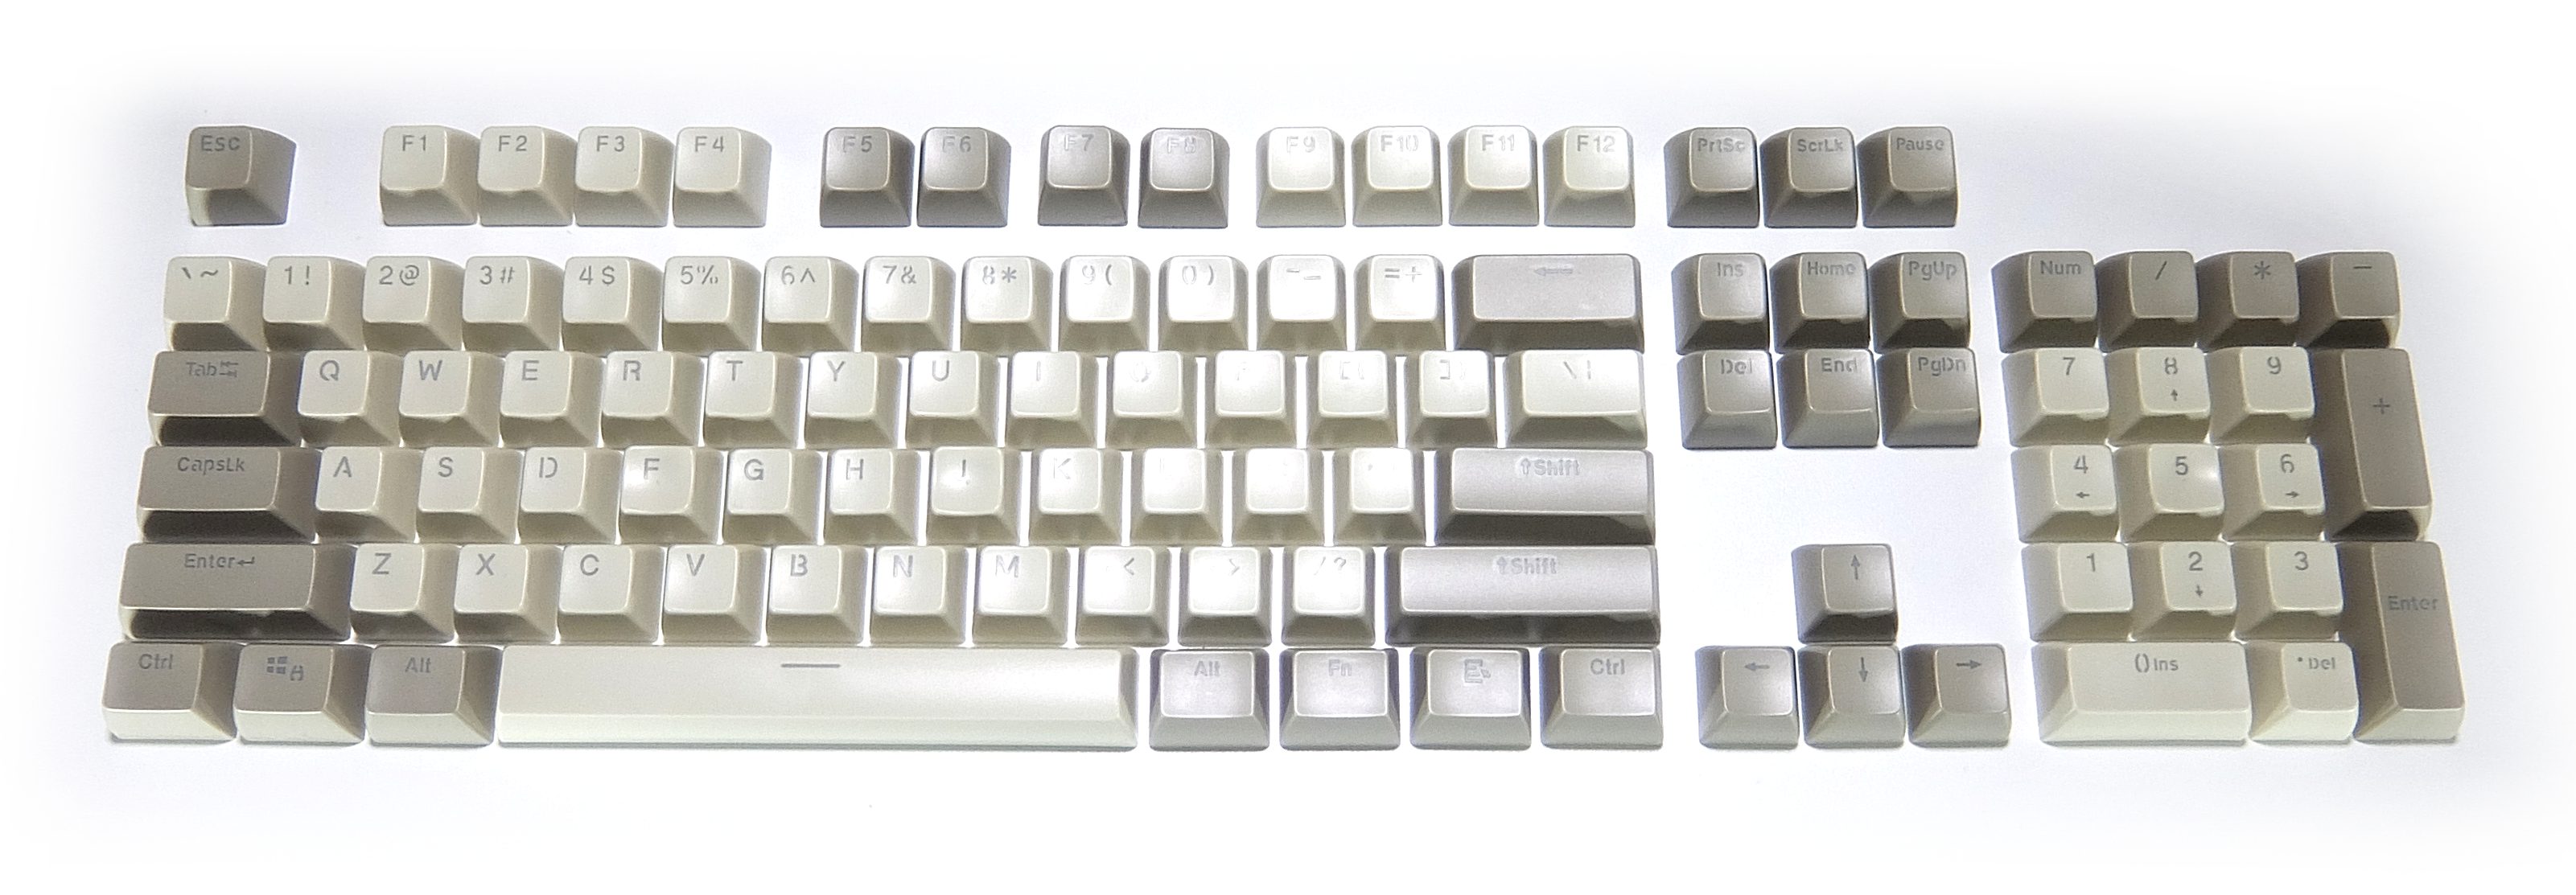 キートップシリーズ – BTO Self-Made keyboards